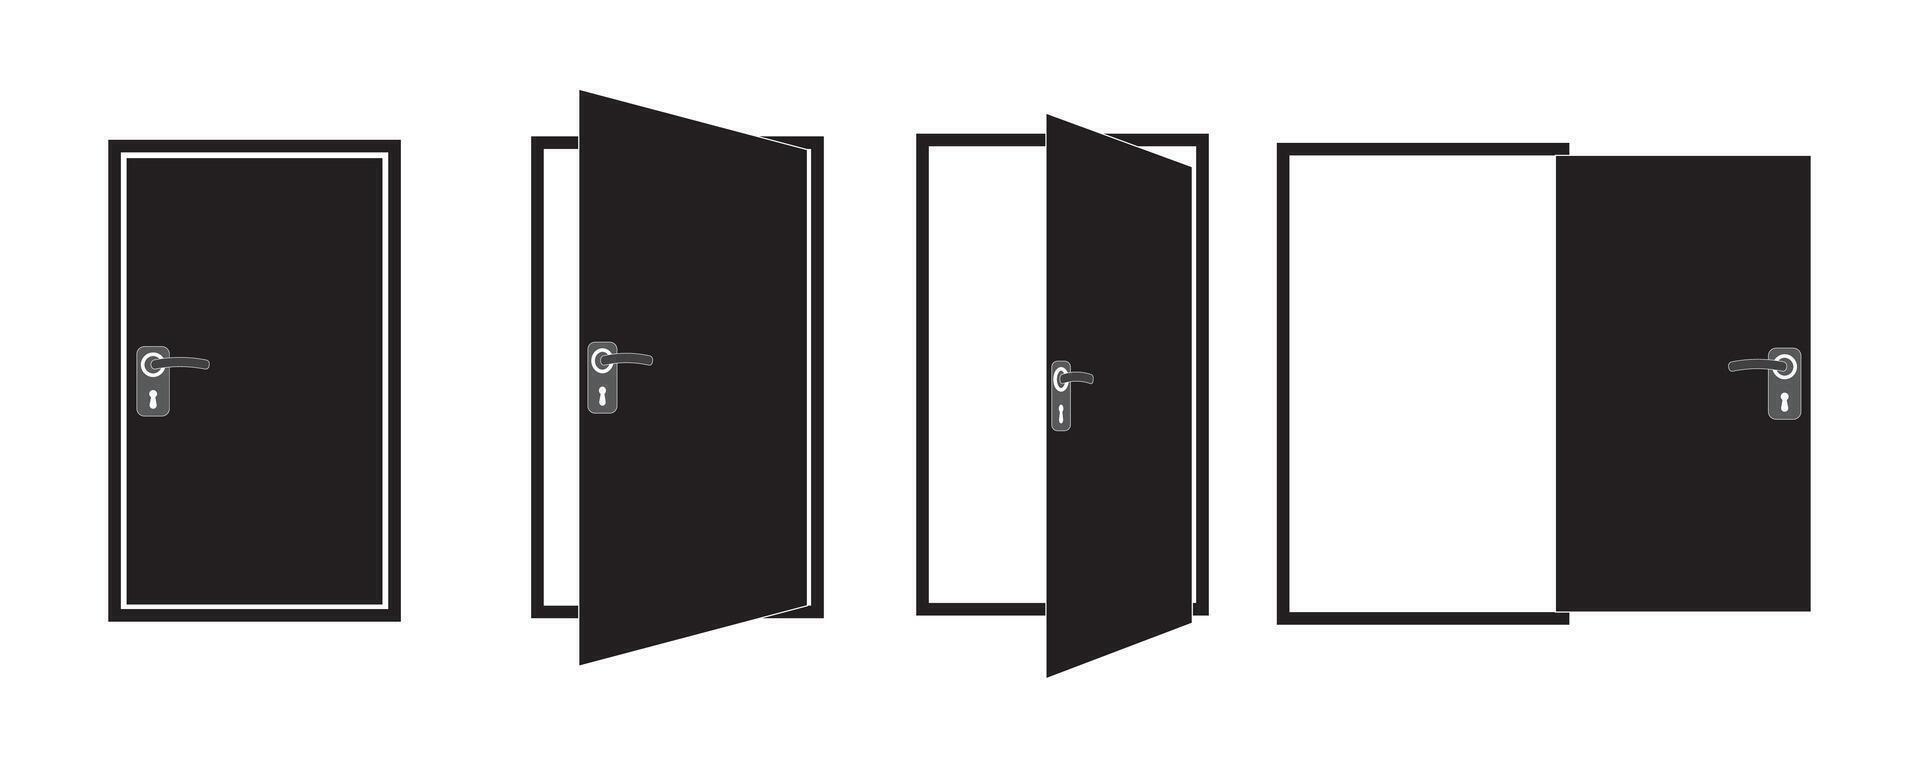 puerta íconos recopilación. abierto, cerca y un frasco puerta. oficina puertas, puertas recopilación. abrió Entrada puerta conjunto plano estilo. vector